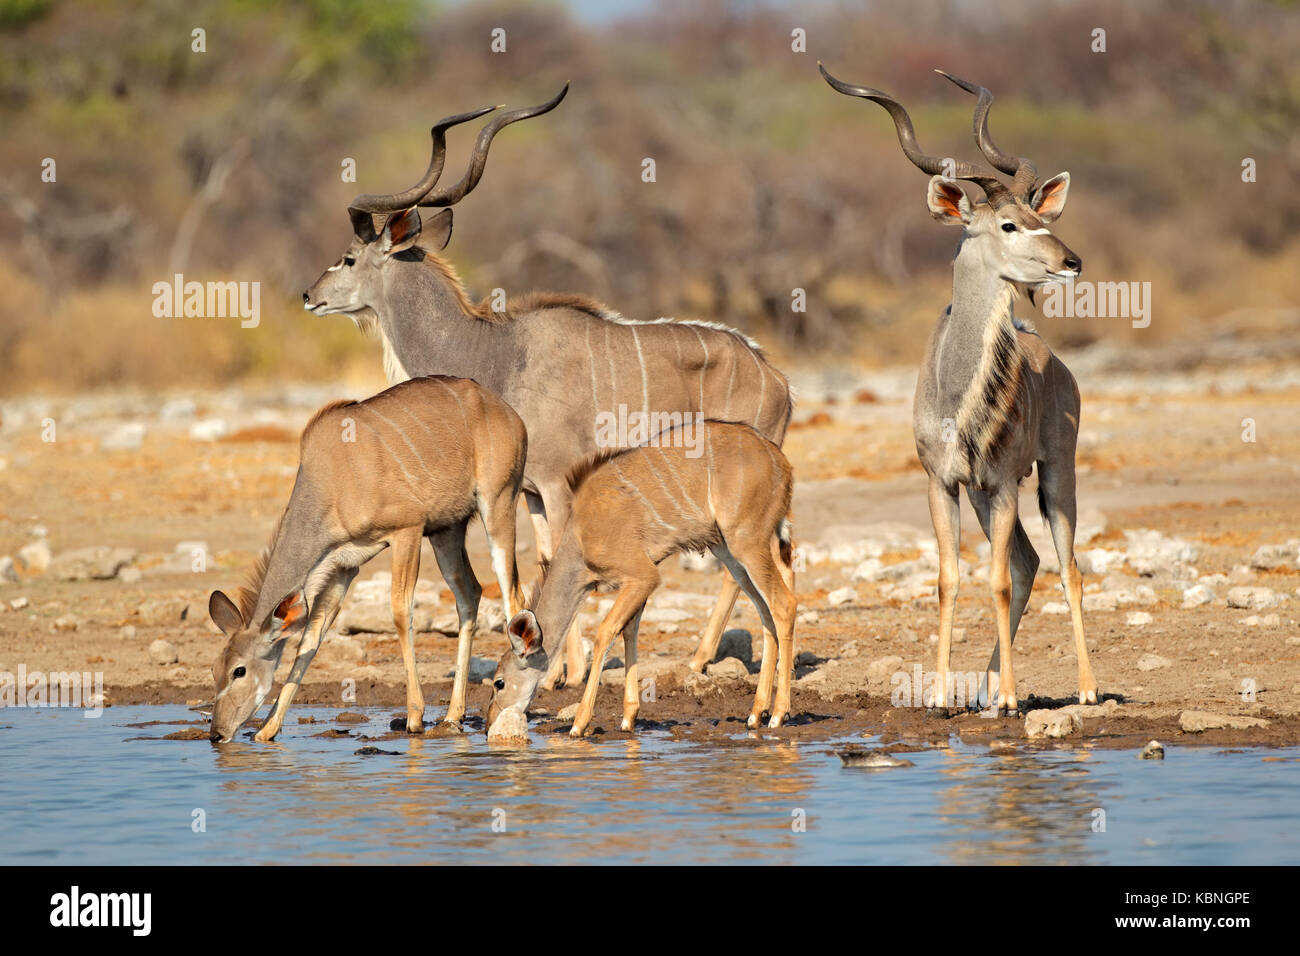 Kudu antelopes (Tragelaphus strepsiceros) at a waterhole, Etosha National Park, Namibia Stock Photo